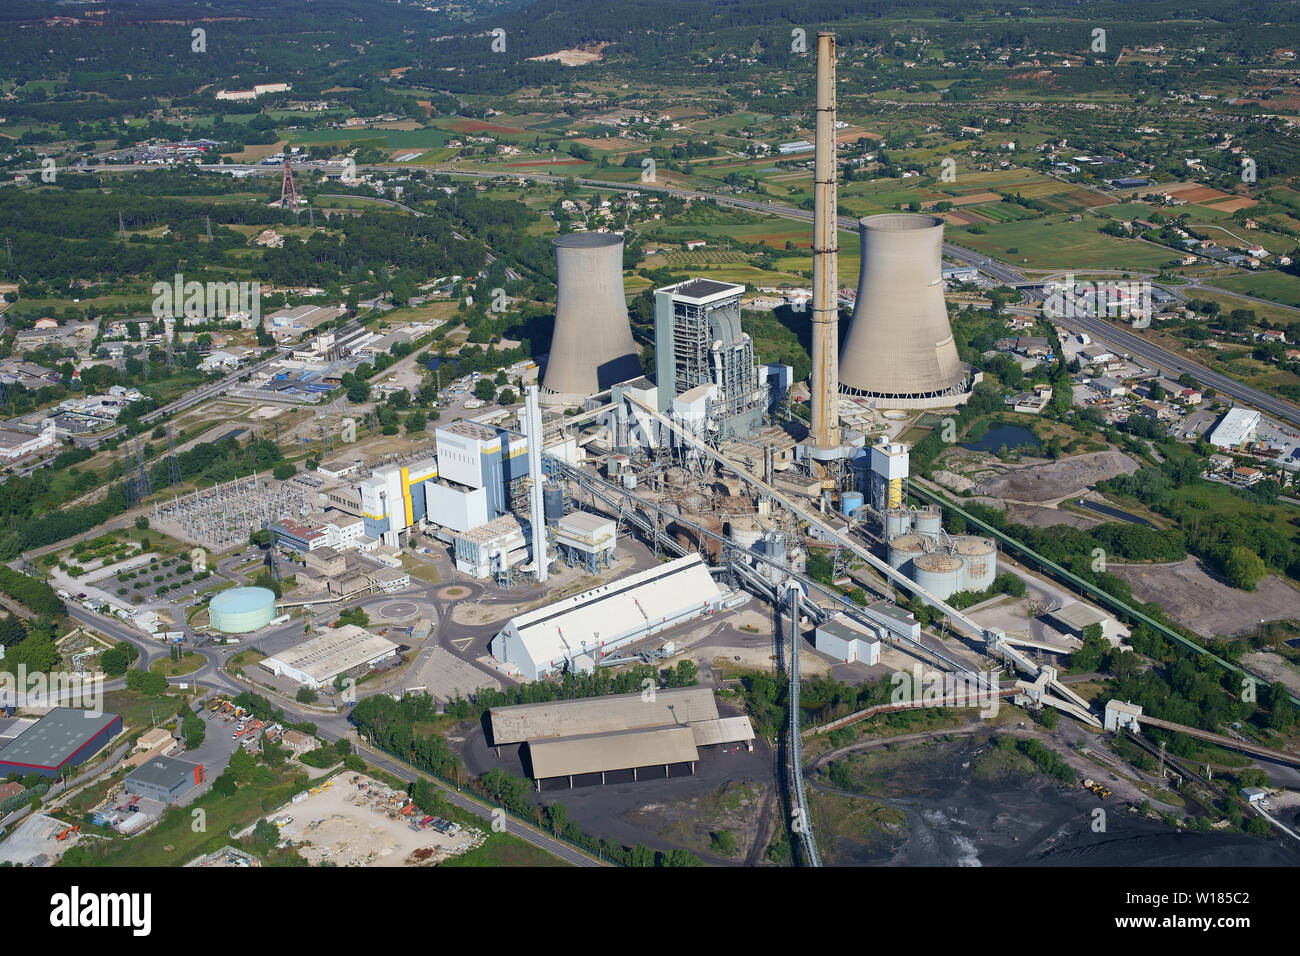 VUE AÉRIENNE. Grande centrale thermique au charbon. A 297m de hauteur, c'est la plus grande cheminée de France (à partir de 2019). Gardanne, Provence, France. Banque D'Images